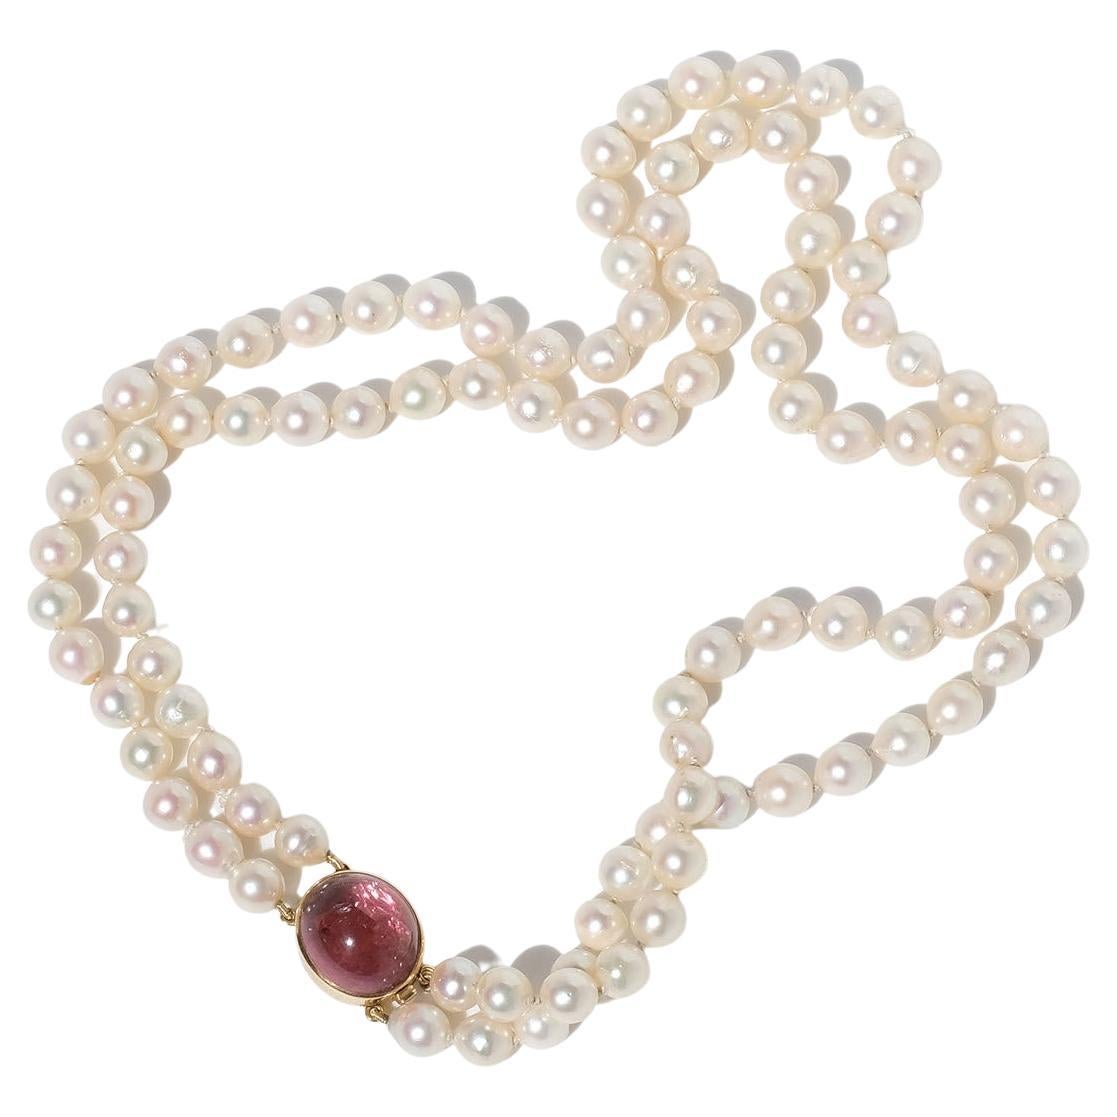 Doppelreihige Vintage-Perlenkette von Meister Rey Urban, hergestellt 1956